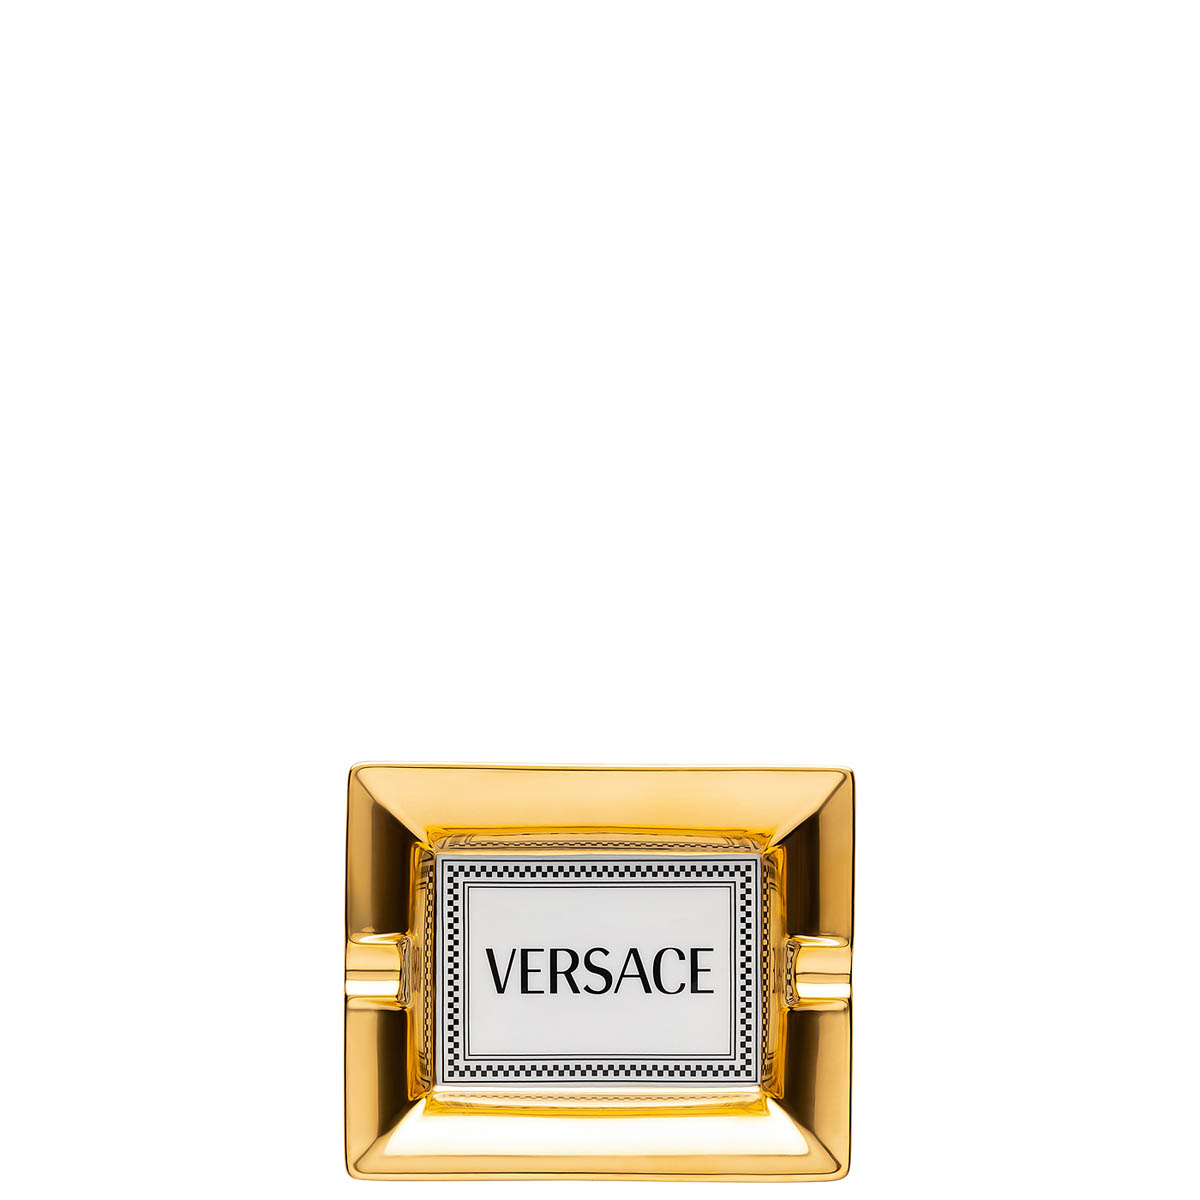 Пепельница 13 см MEDUSA RHAPSODY - Rosenthal Versace